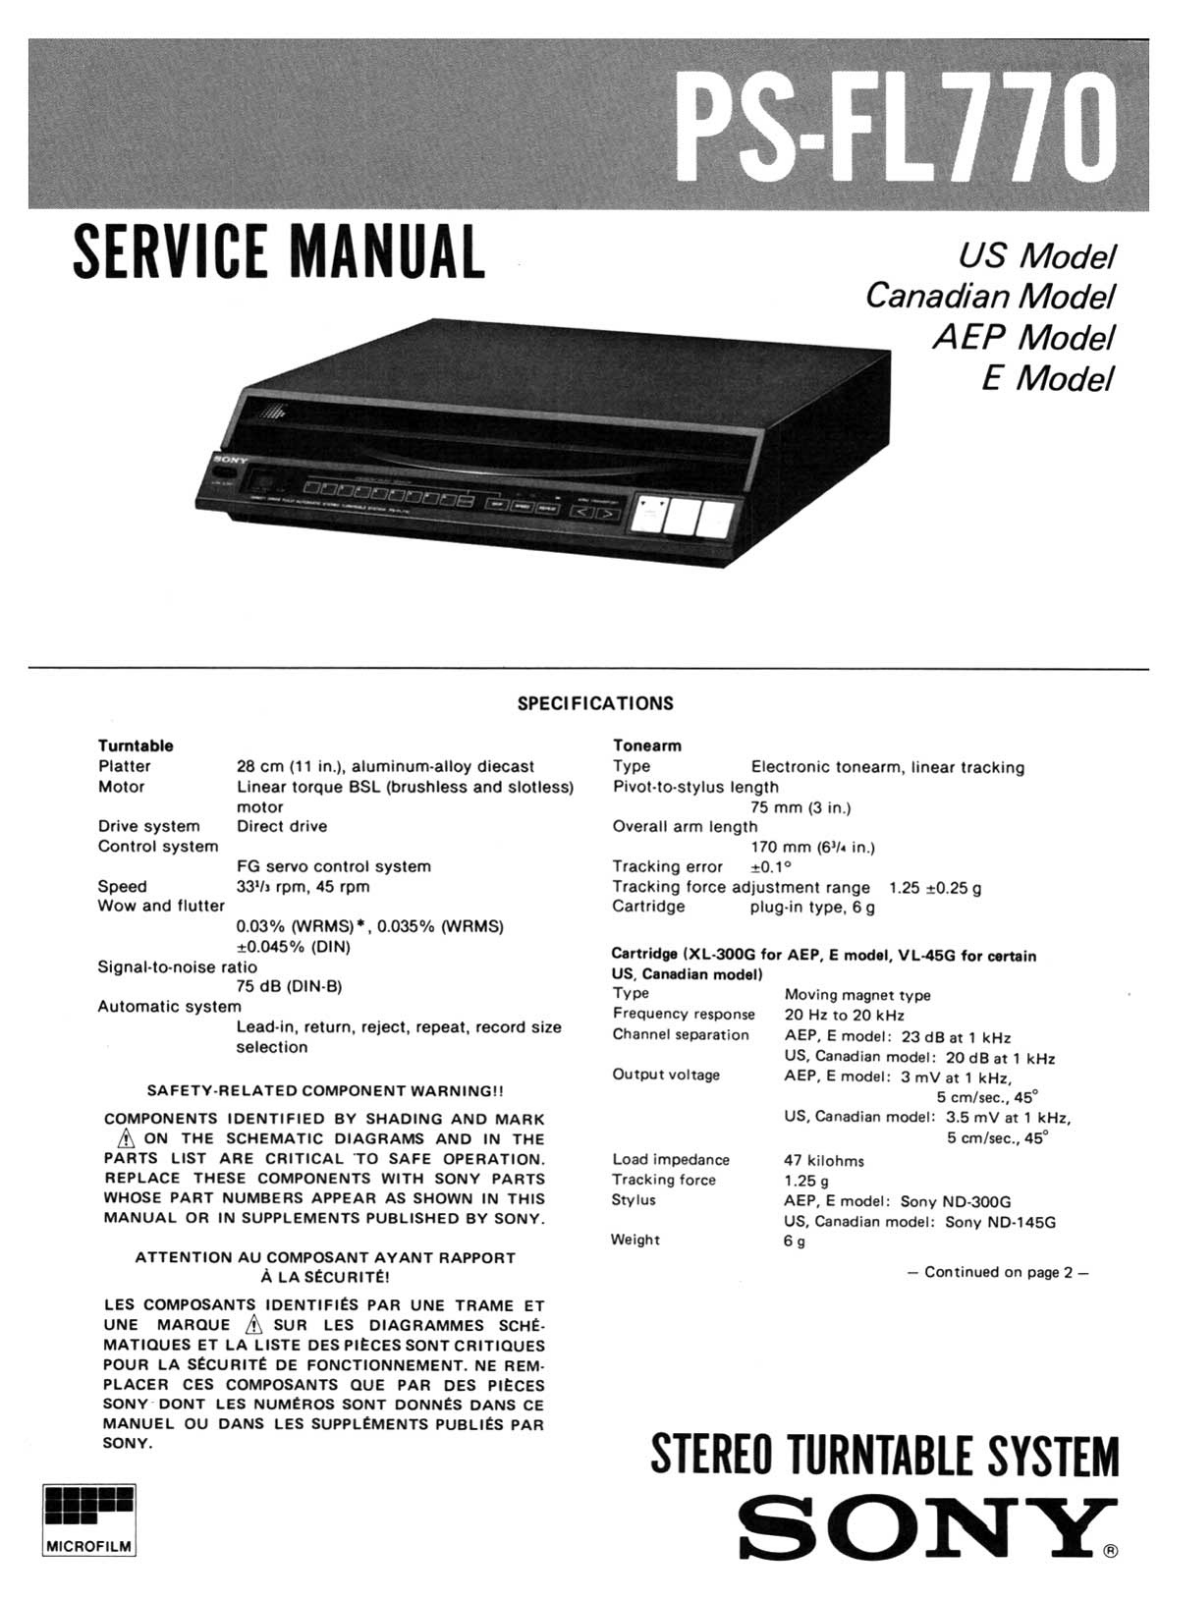 Sony PS-FL770 Service Manual